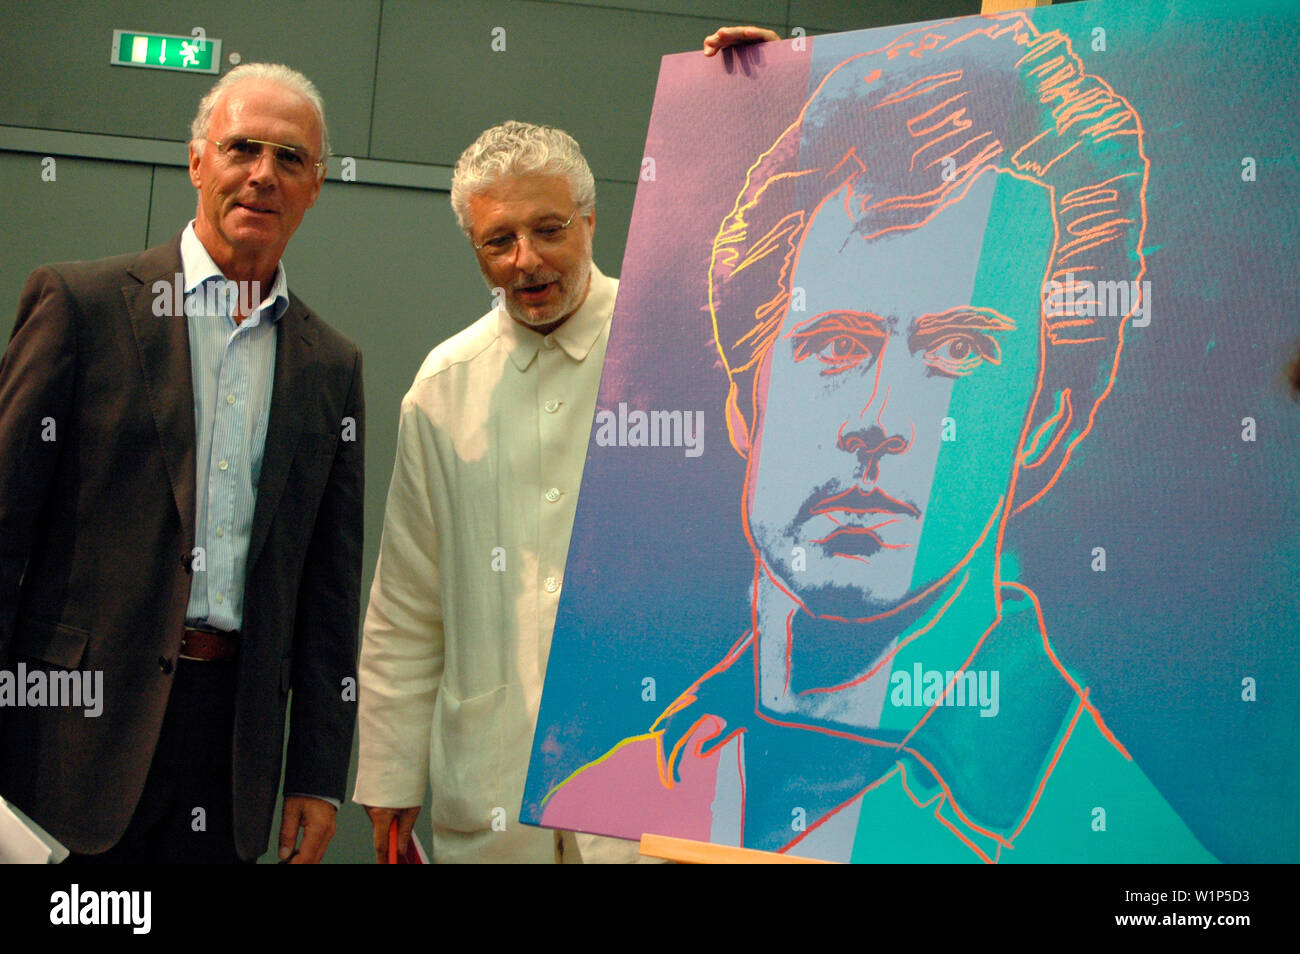 Franz Beckenbauer, Andre Heller neben einem Portrait Beckenbauers, das Andy Warhol angefertigt hatte - Vorstellung des Kulturprogramms zur Fussballwel Stock Photo